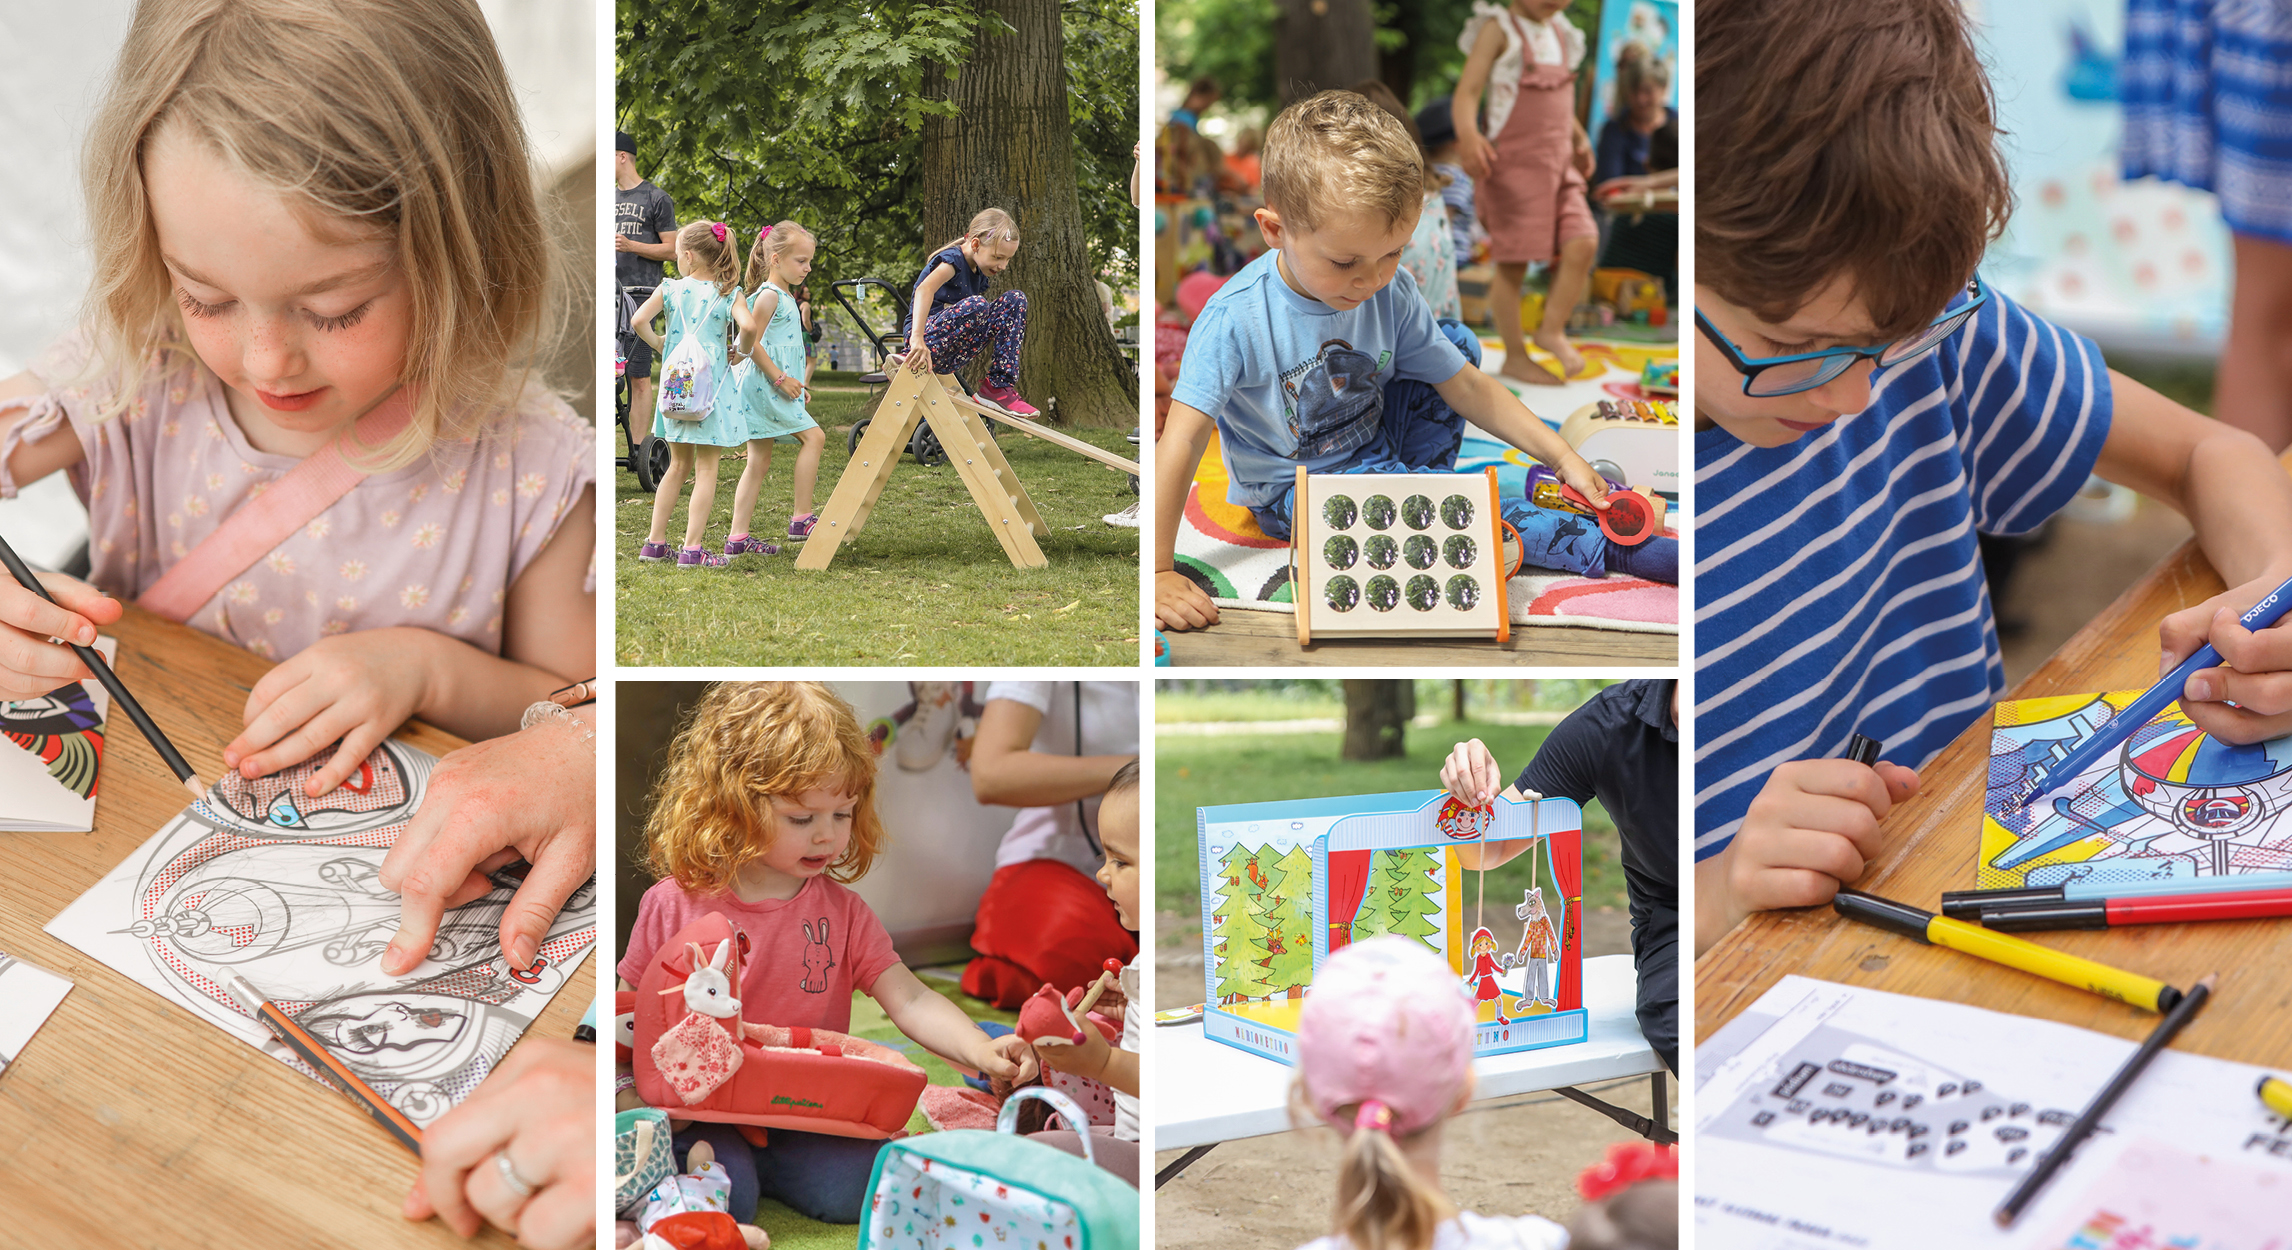 Agátin hravý festival: Den plný hraní a tvoření pro děti i rodiče